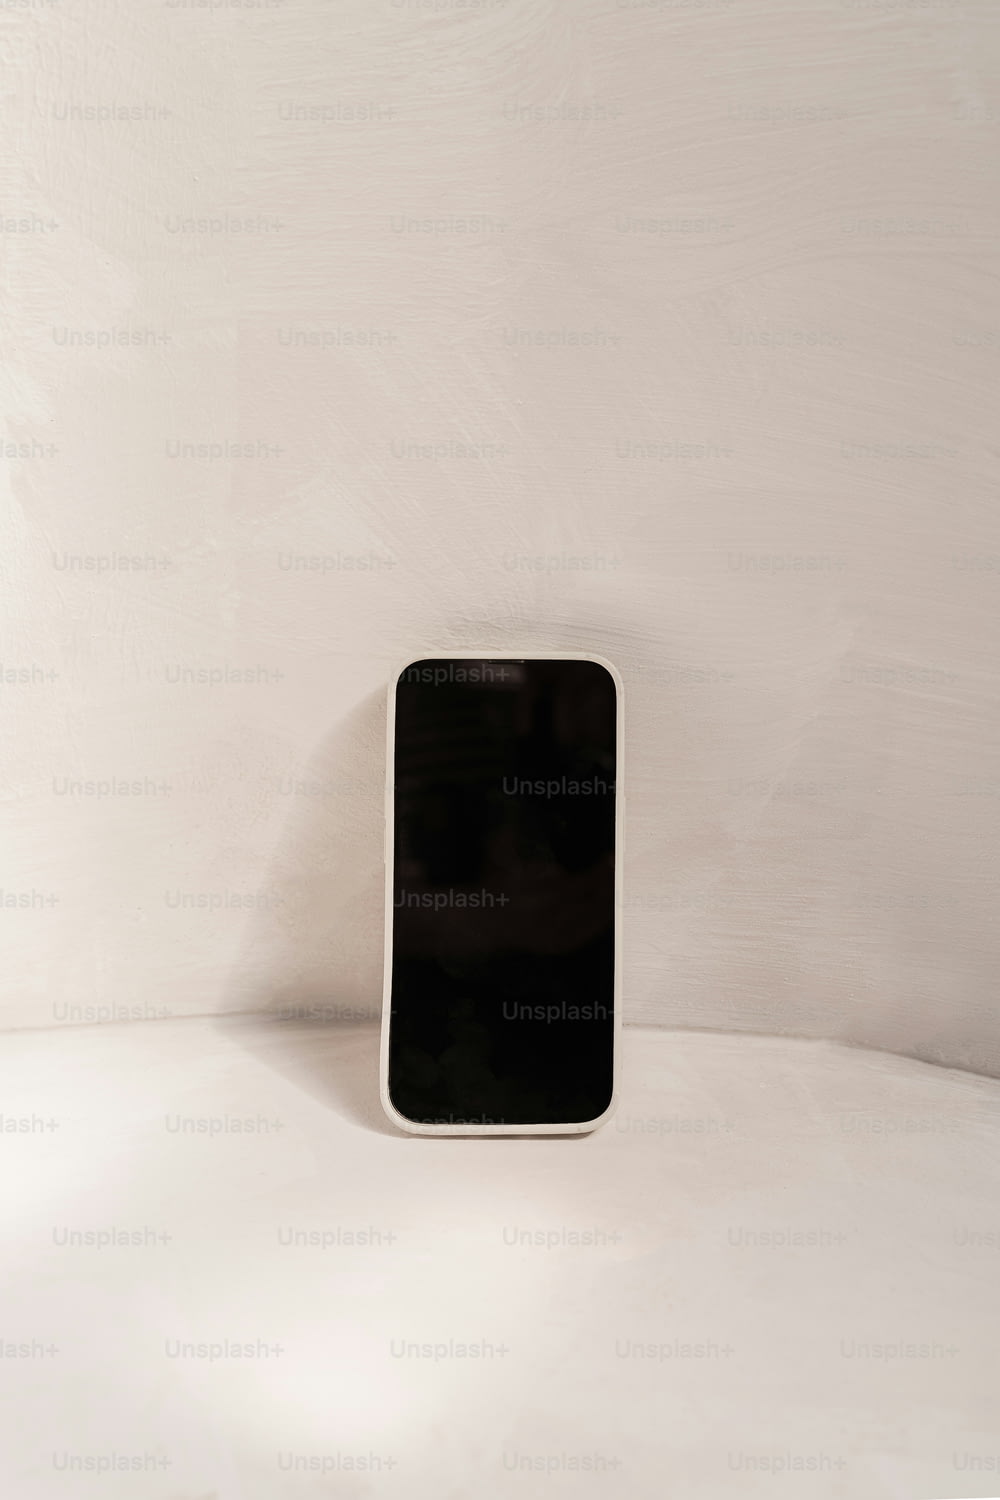 하얀 탁자 위에 놓인 검은색 휴대전화